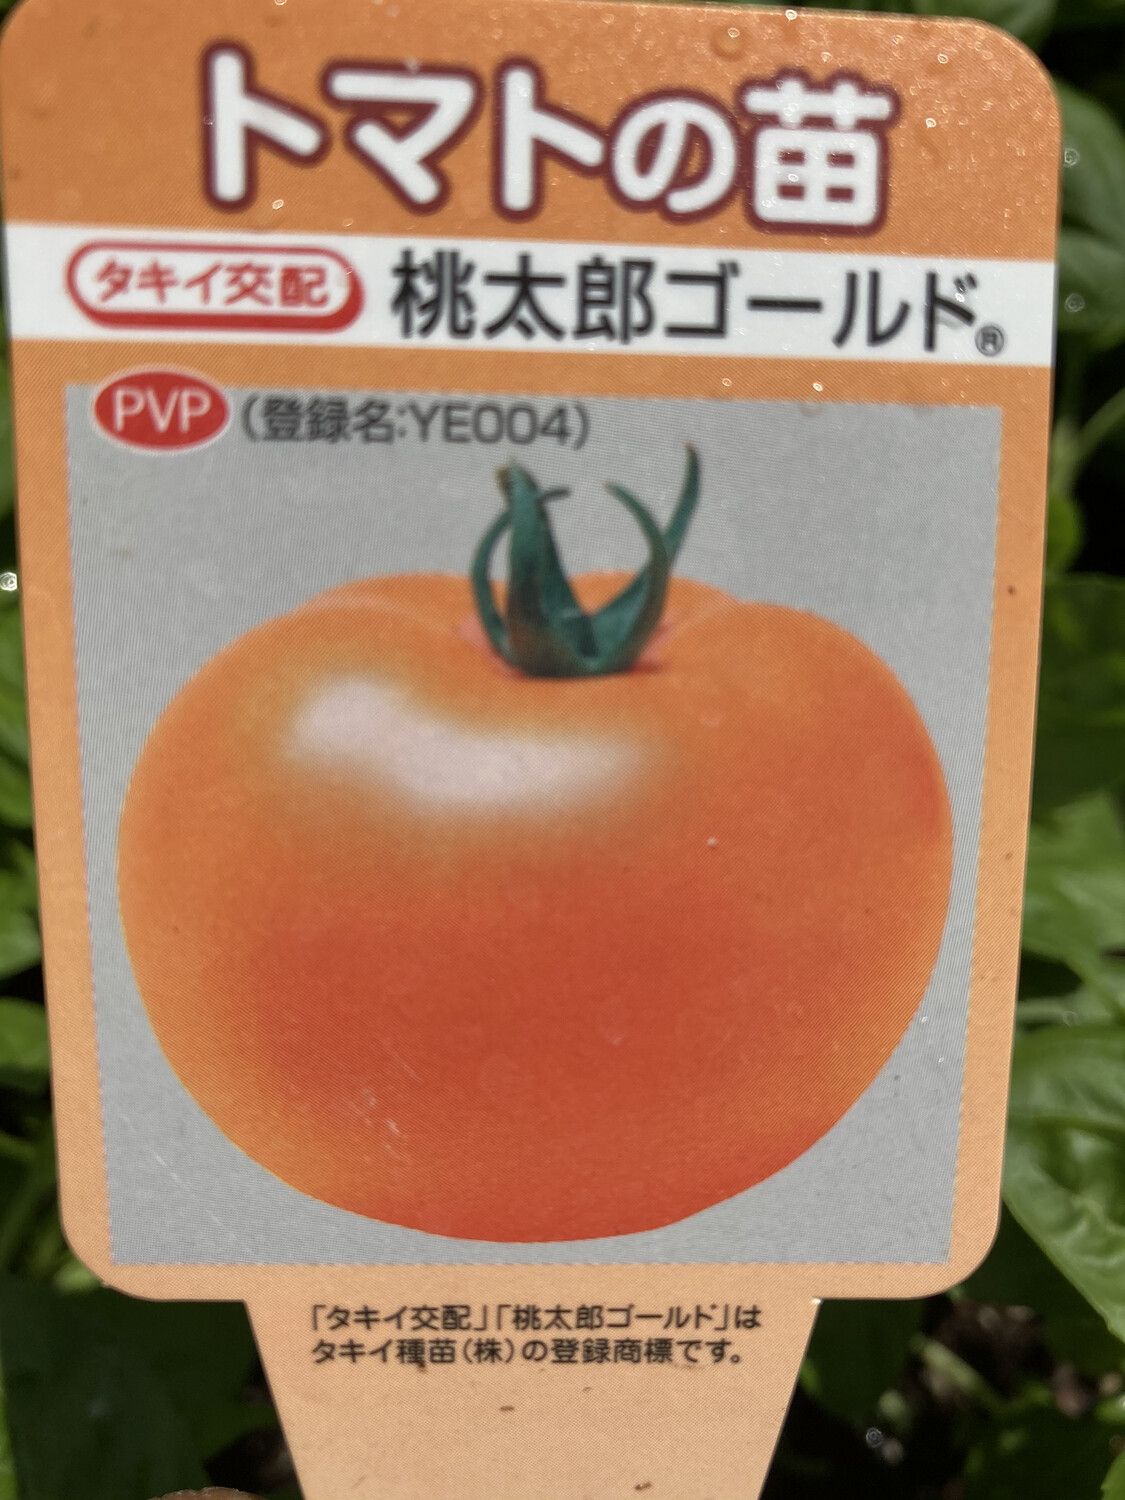 4" Tomato Momotaro Gold